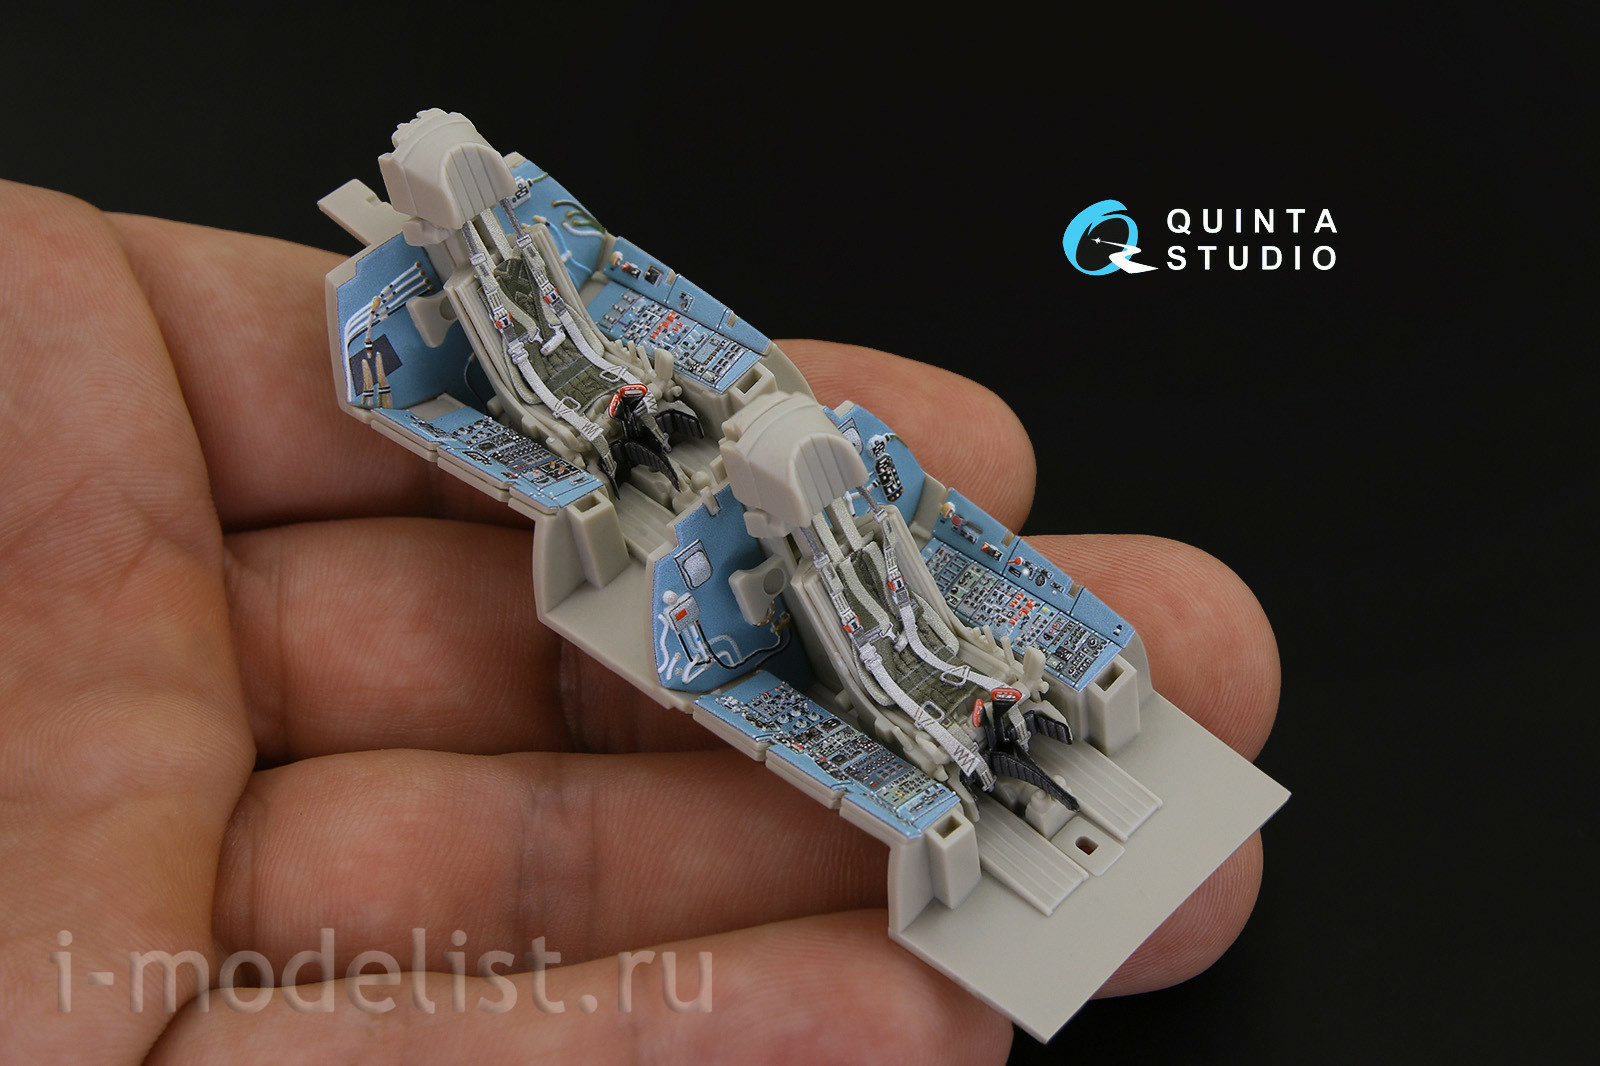 QD48181 Quinta Studio 1/48 3D Декаль интерьера кабины Суххой-27УБ (для модели KittyHawk)